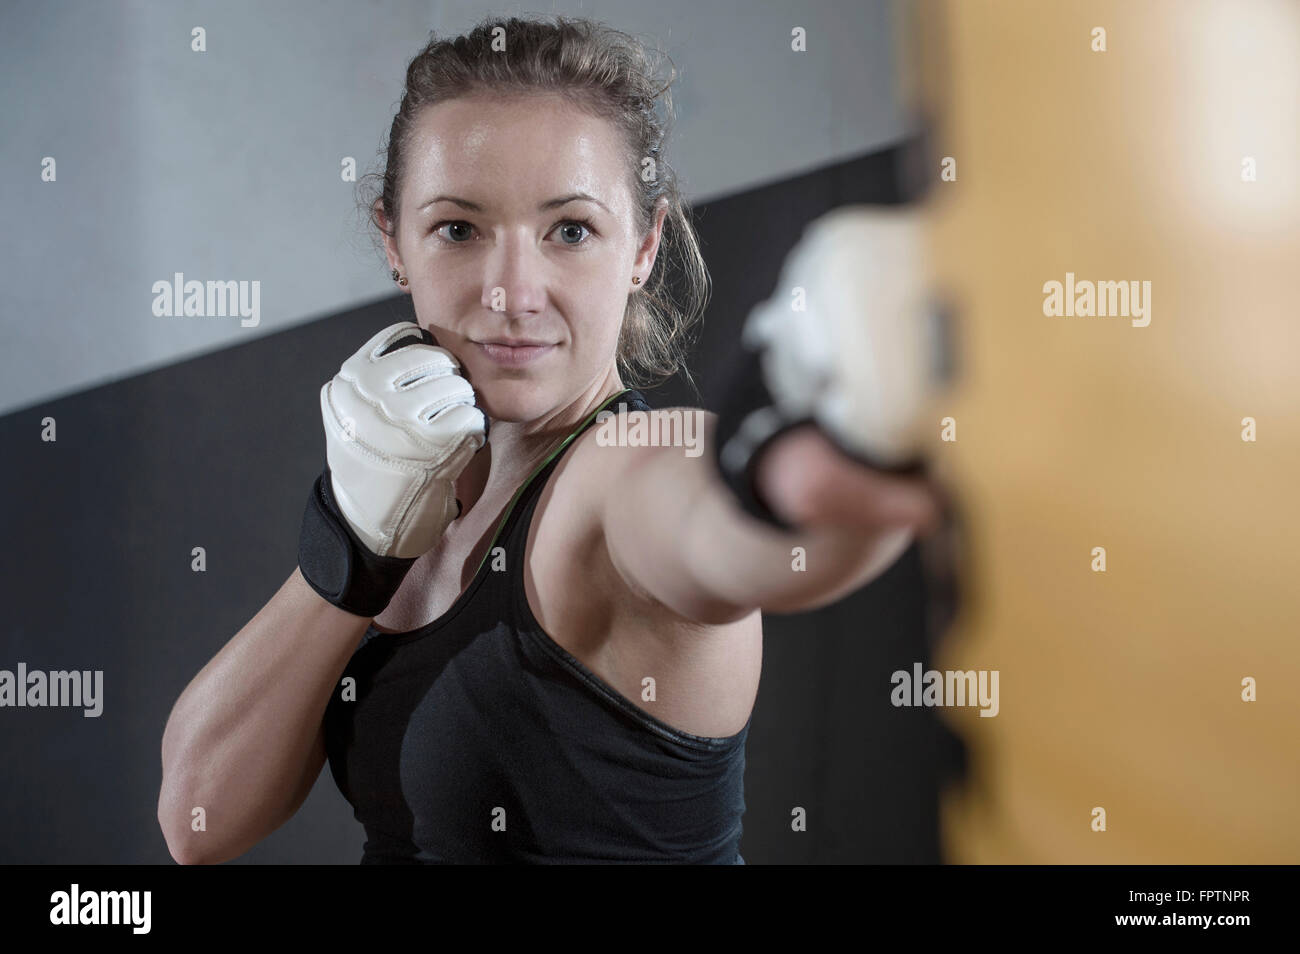 Junge Frau tun Krafttraining durch Stanzen am Boxsack in der Turnhalle, Bayern, Deutschland Stockfoto